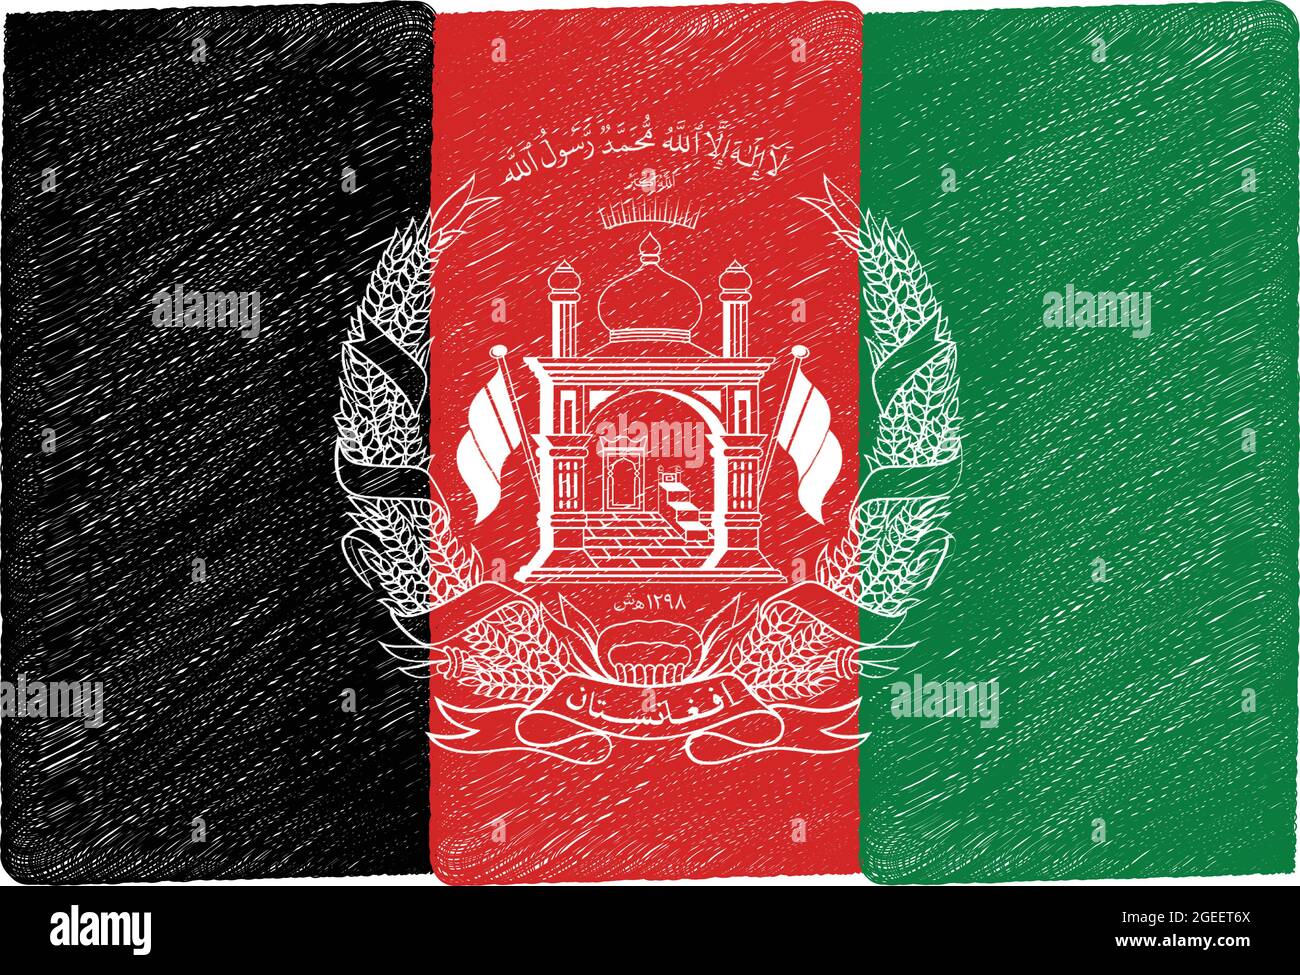 Bandera nacional de Afganistán pintura colores originales ilustración vectorial, República Islámica del Afganistán bandera nacional escudo de armas Ilustración del Vector